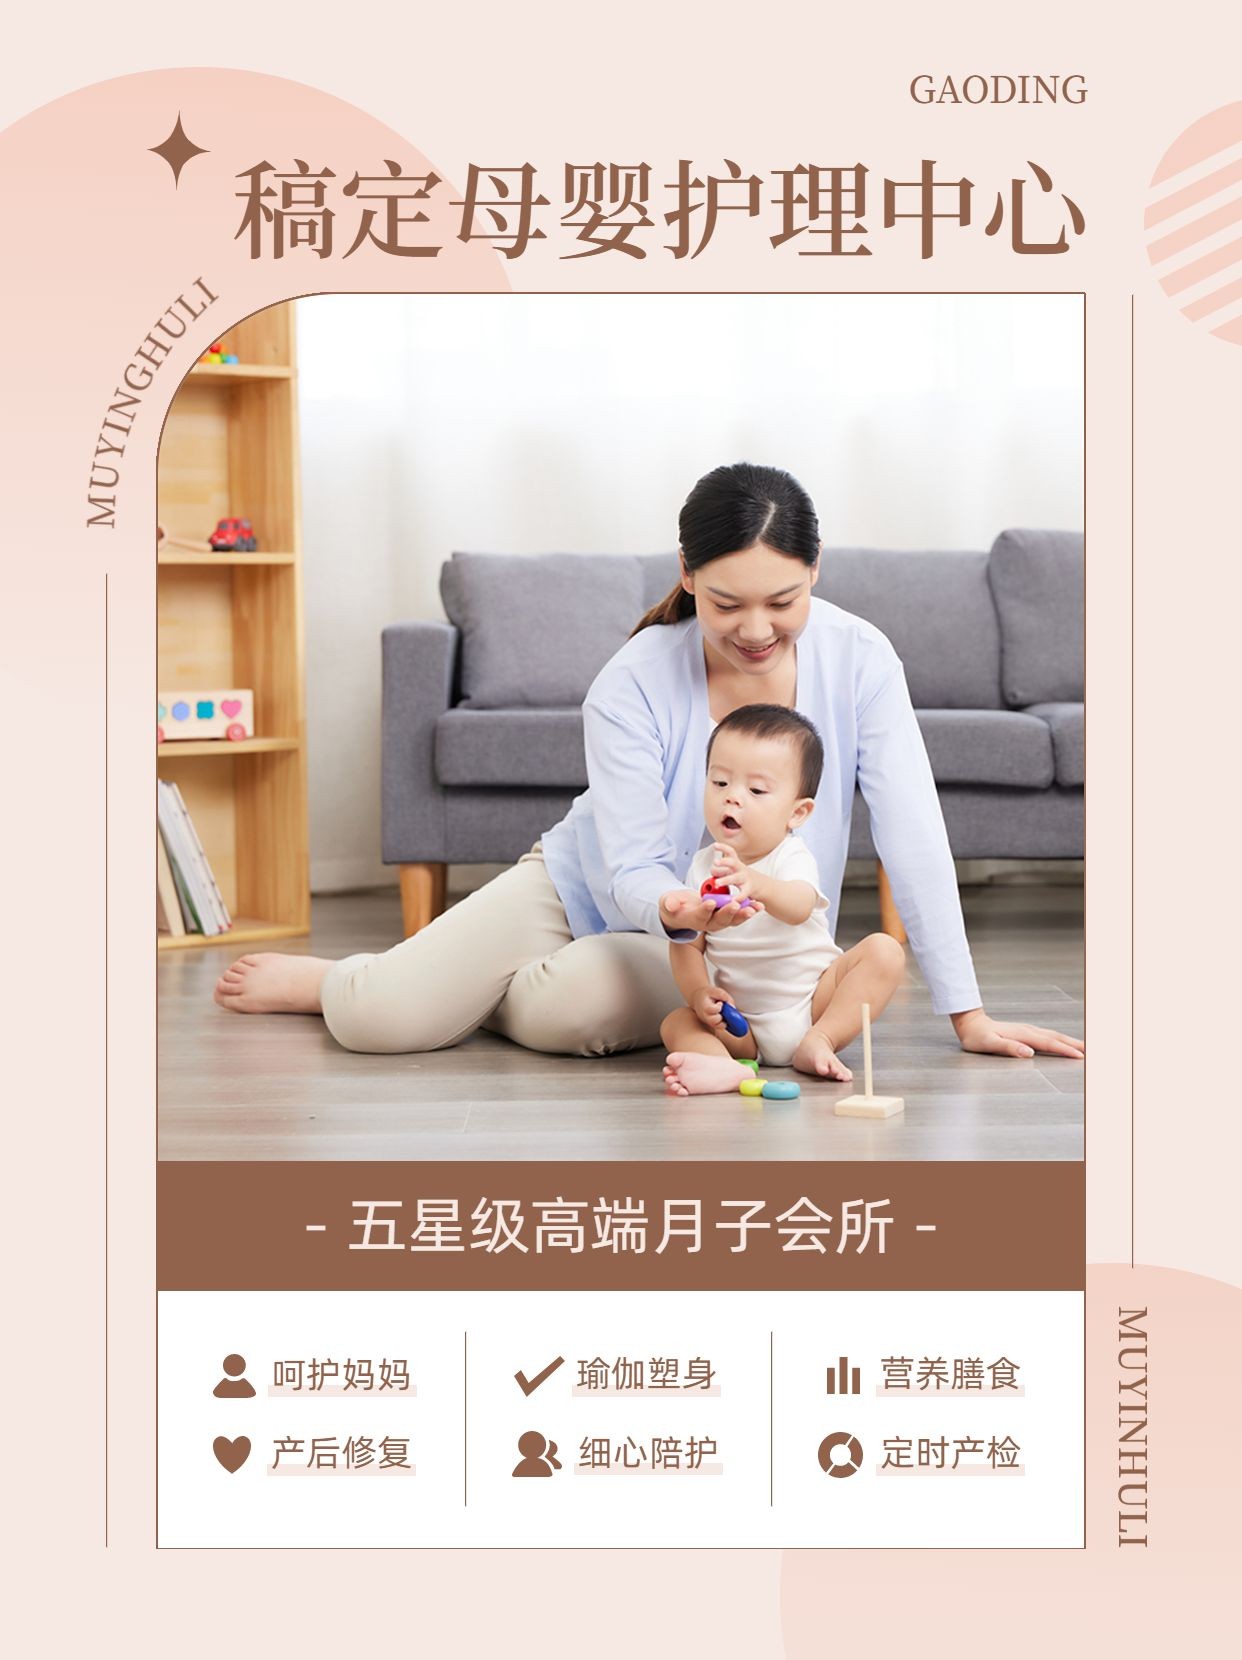 母婴亲子护理中心推荐小红书配图预览效果